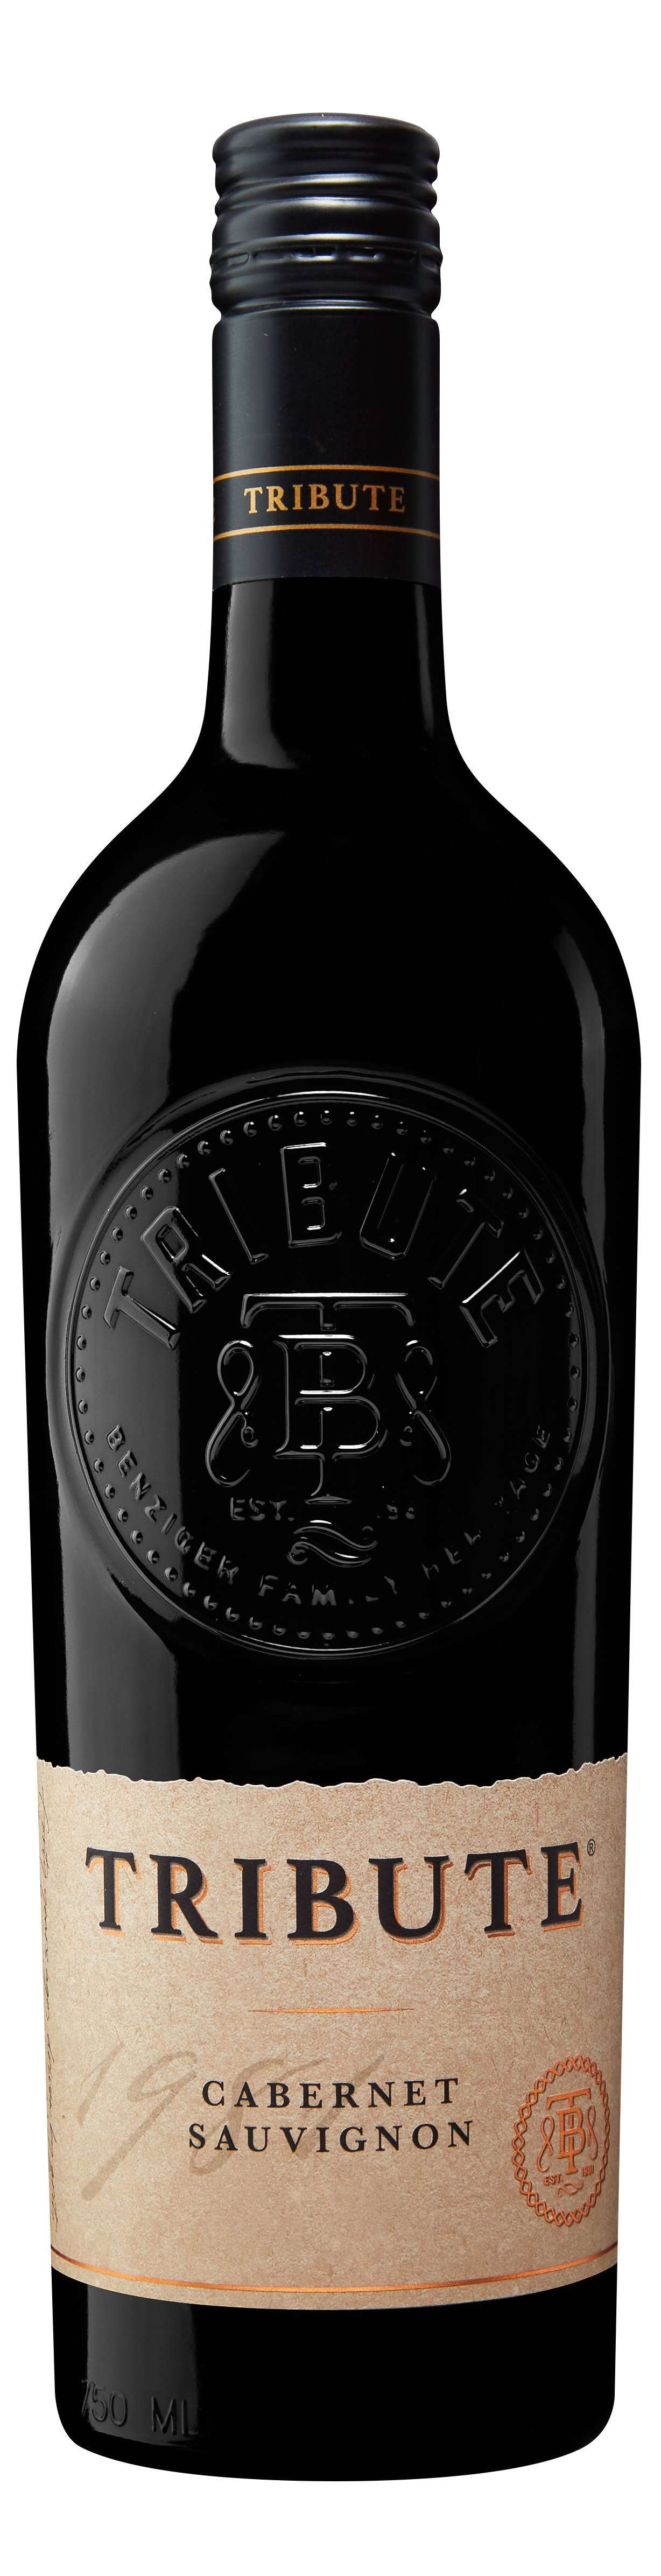 Tribute Cabernet Sauvignon 2020 (750 ml)